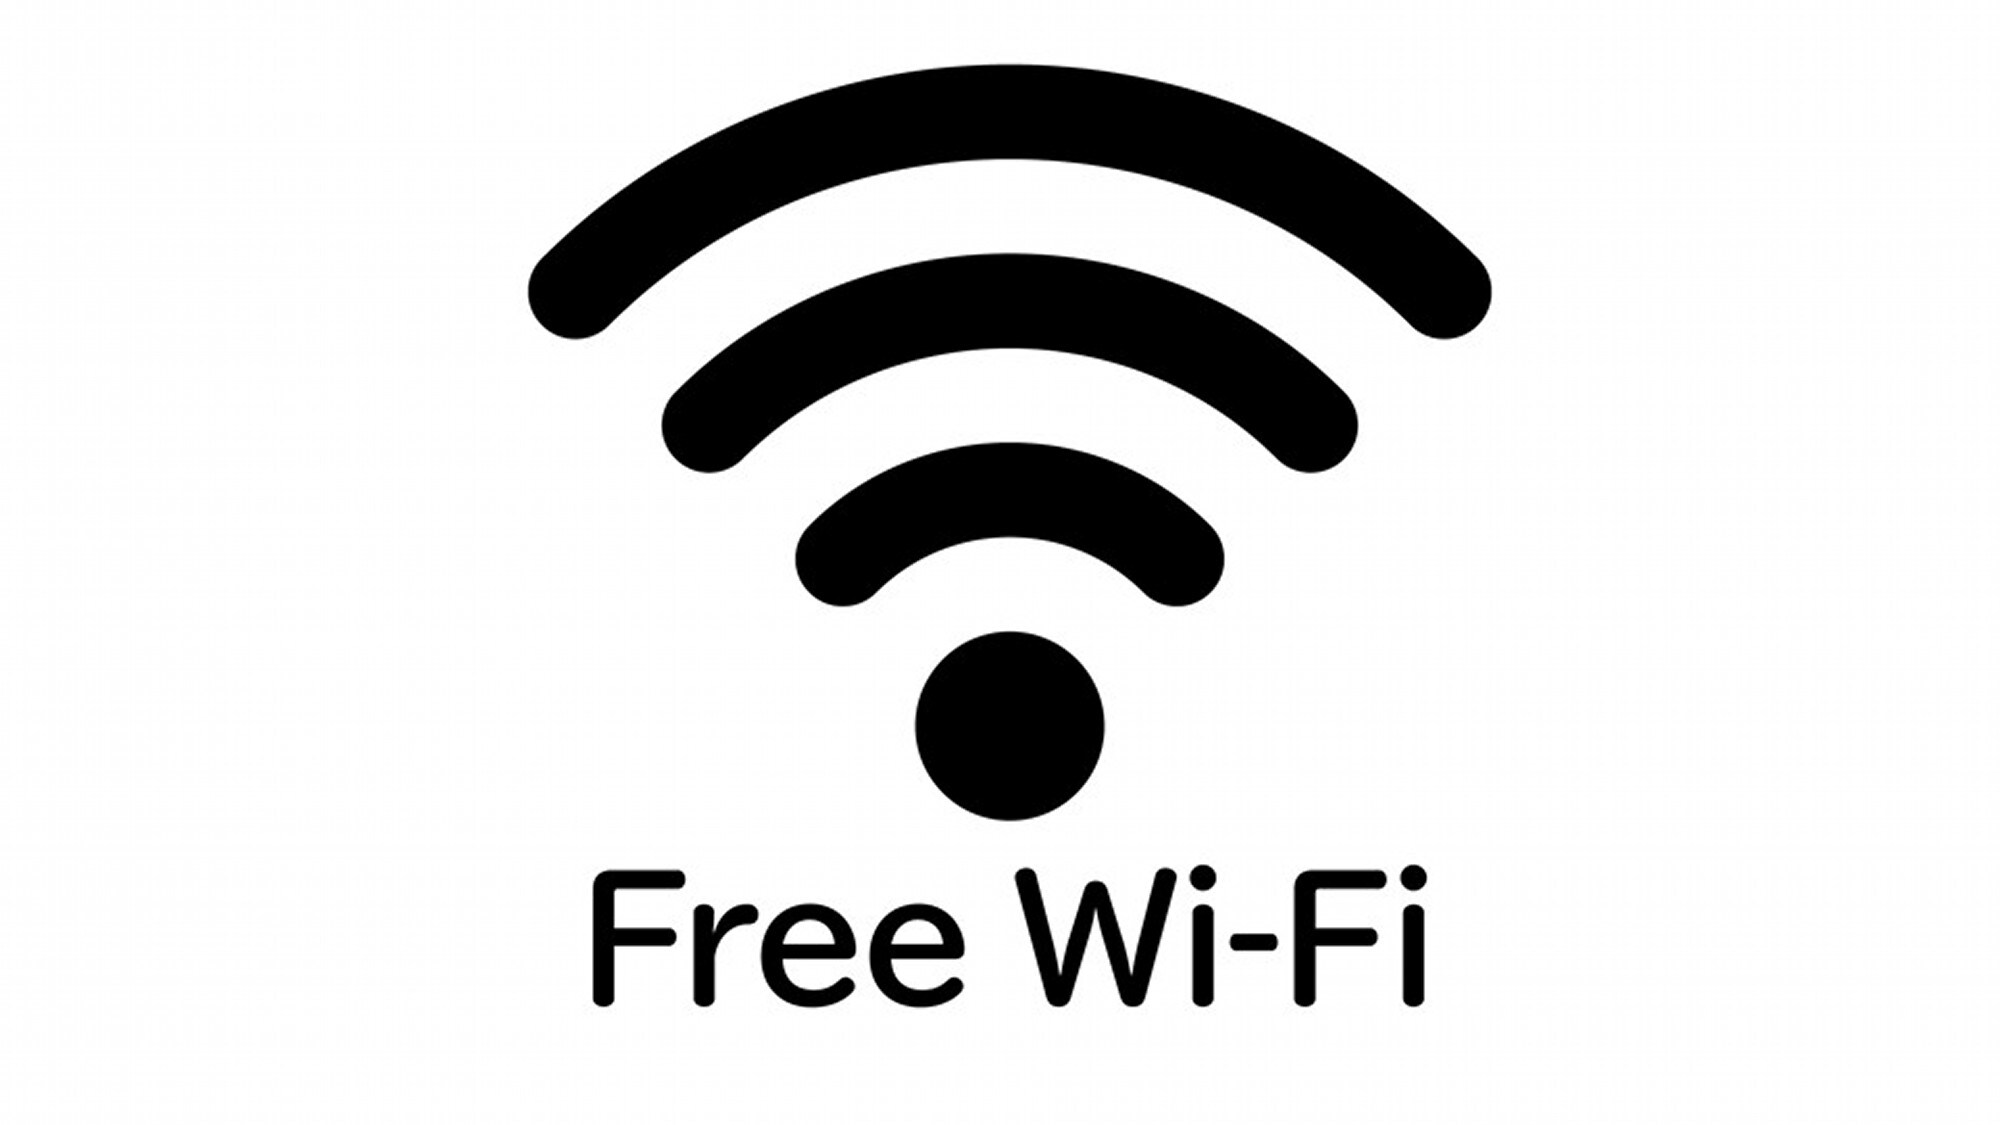 Wi-fi gratis * LAN kabel juga tersedia.